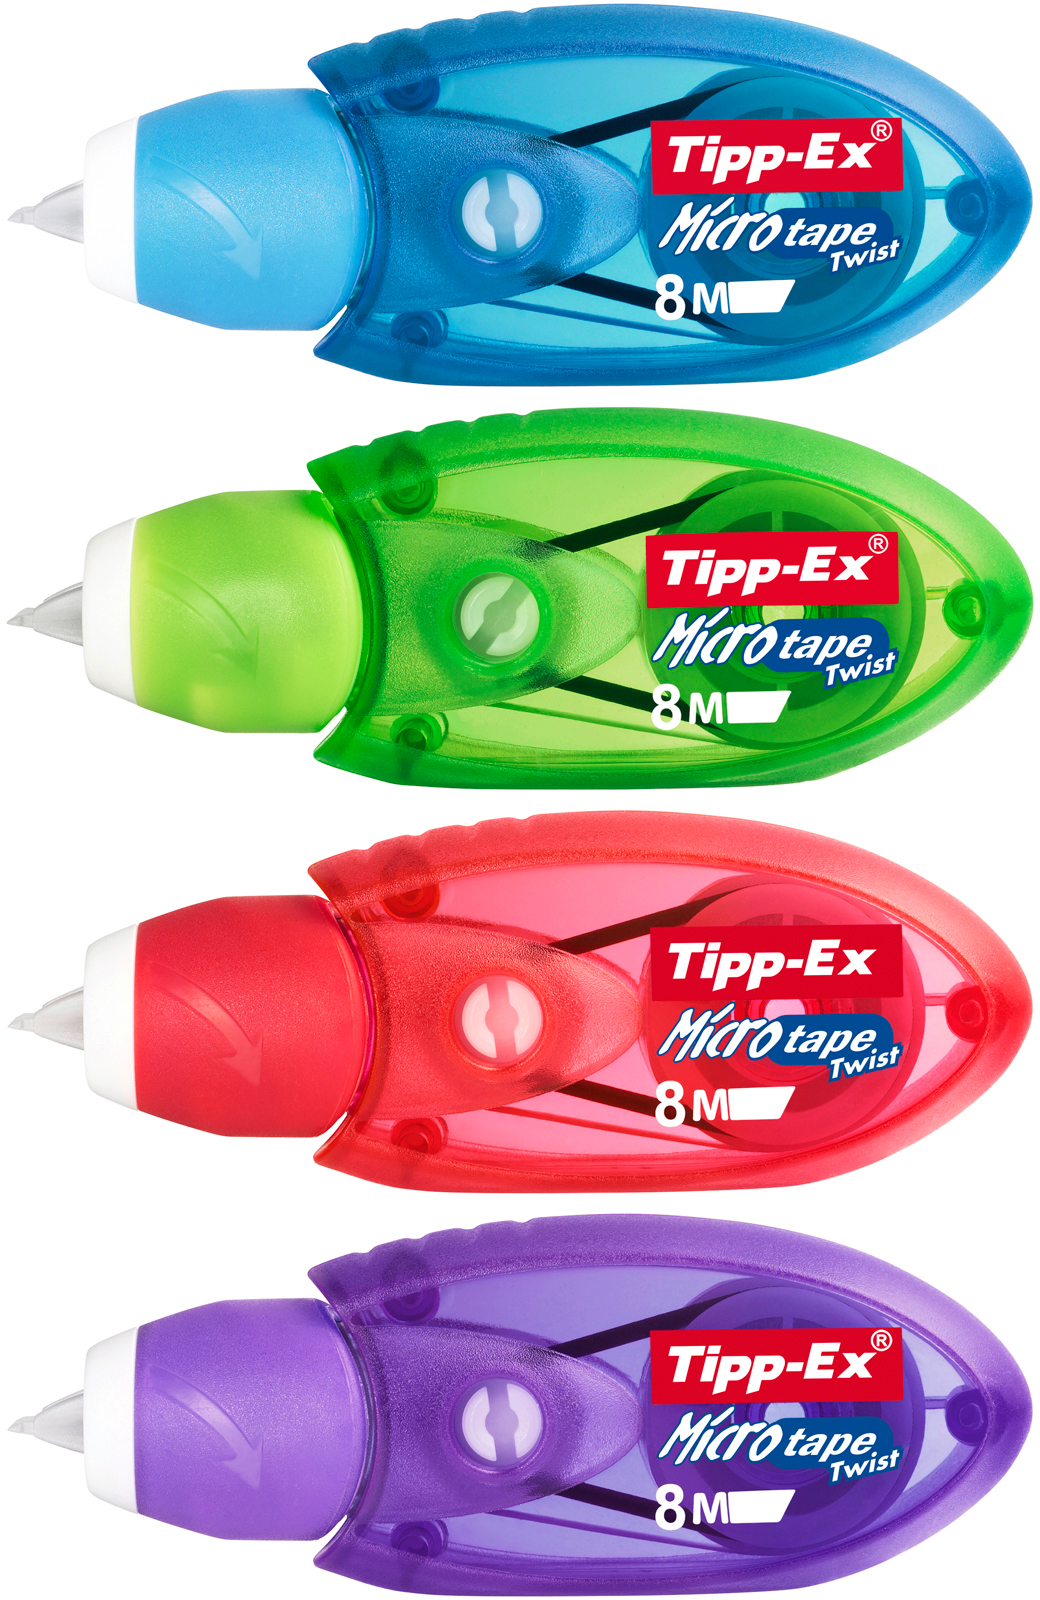 TIPP-EX Microtape Twist 8mx5mm 8794311 blister 2 pcs.